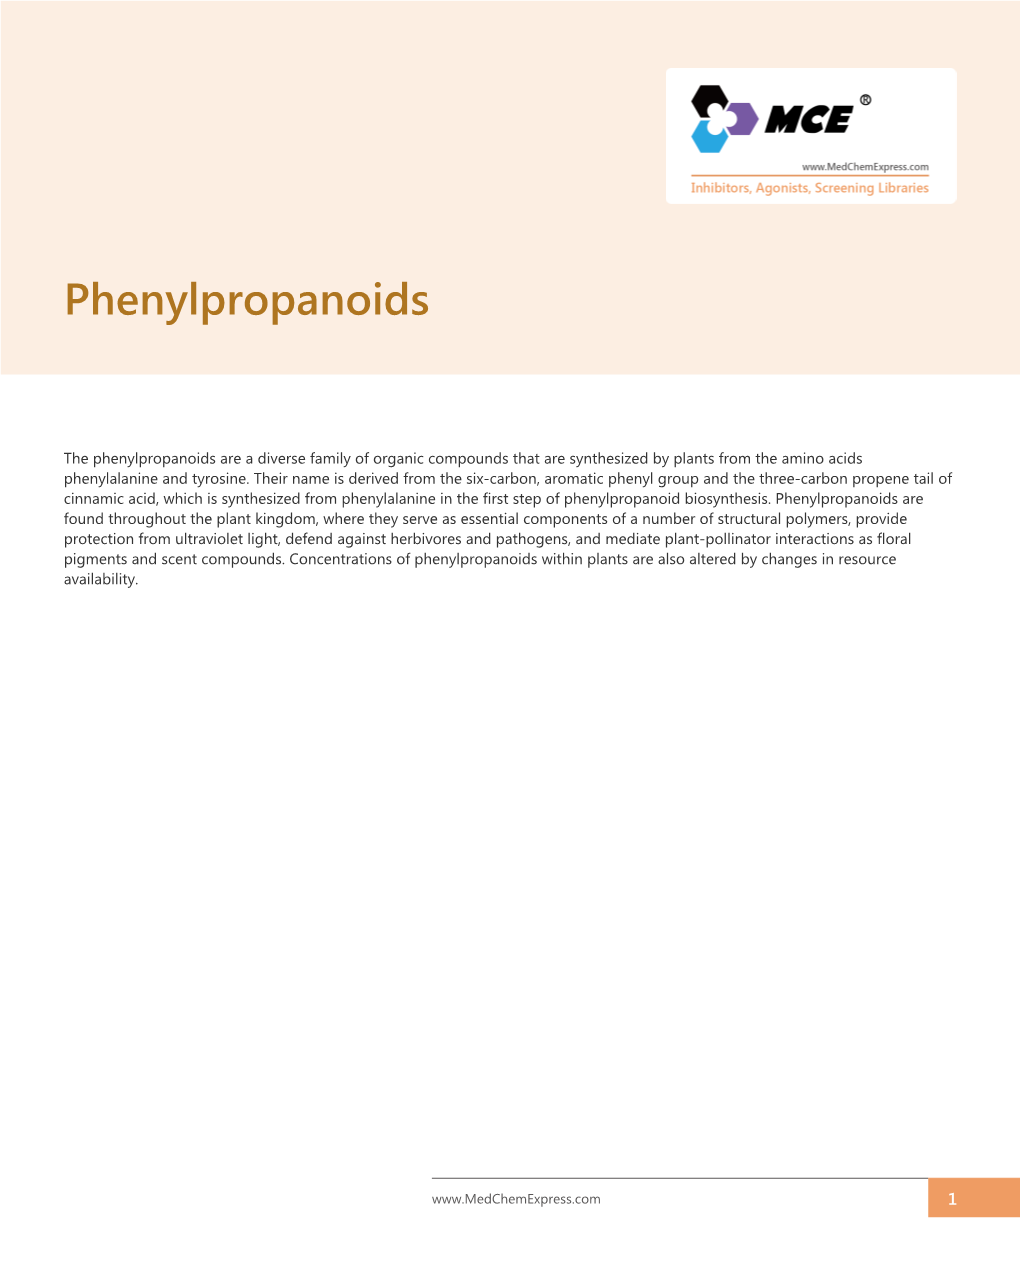 Phenylpropanoids